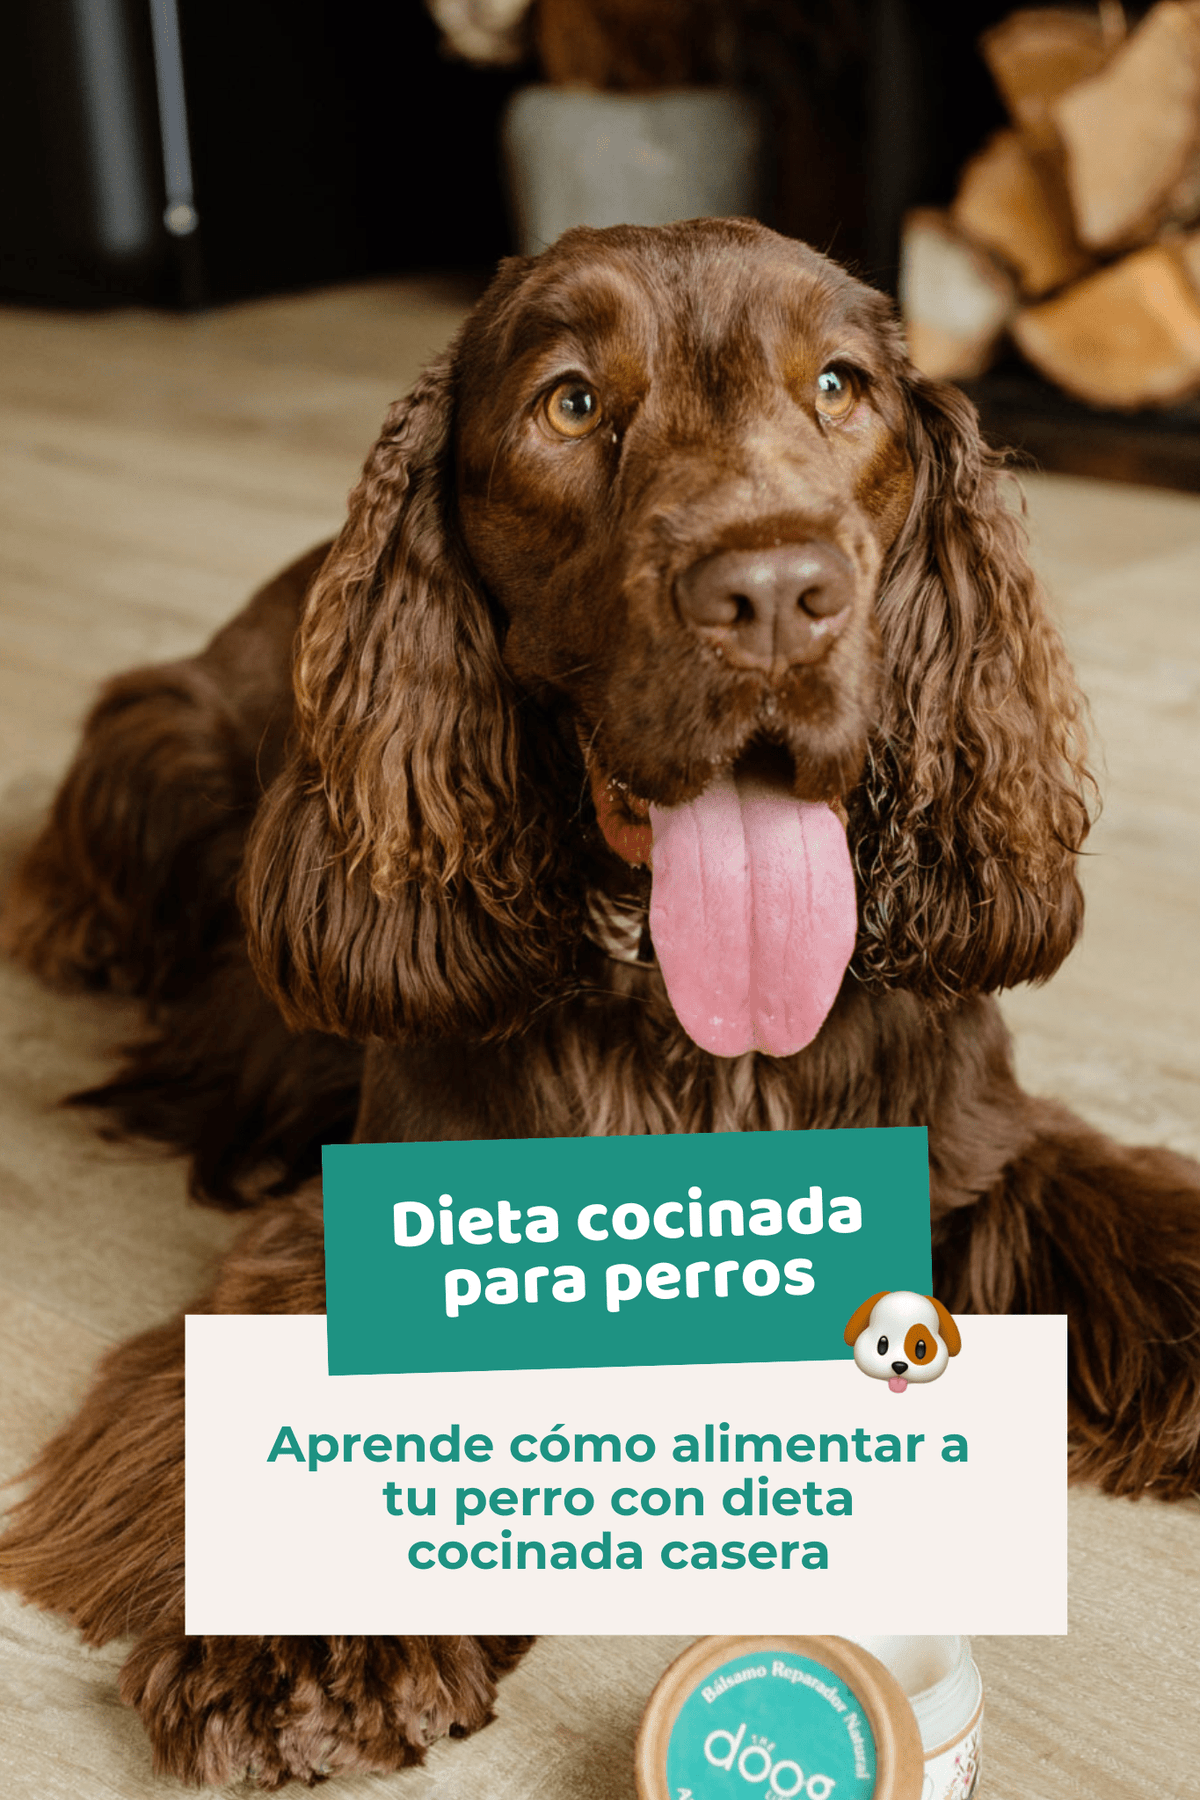 Ebook: Dieta cocinada casera para perros